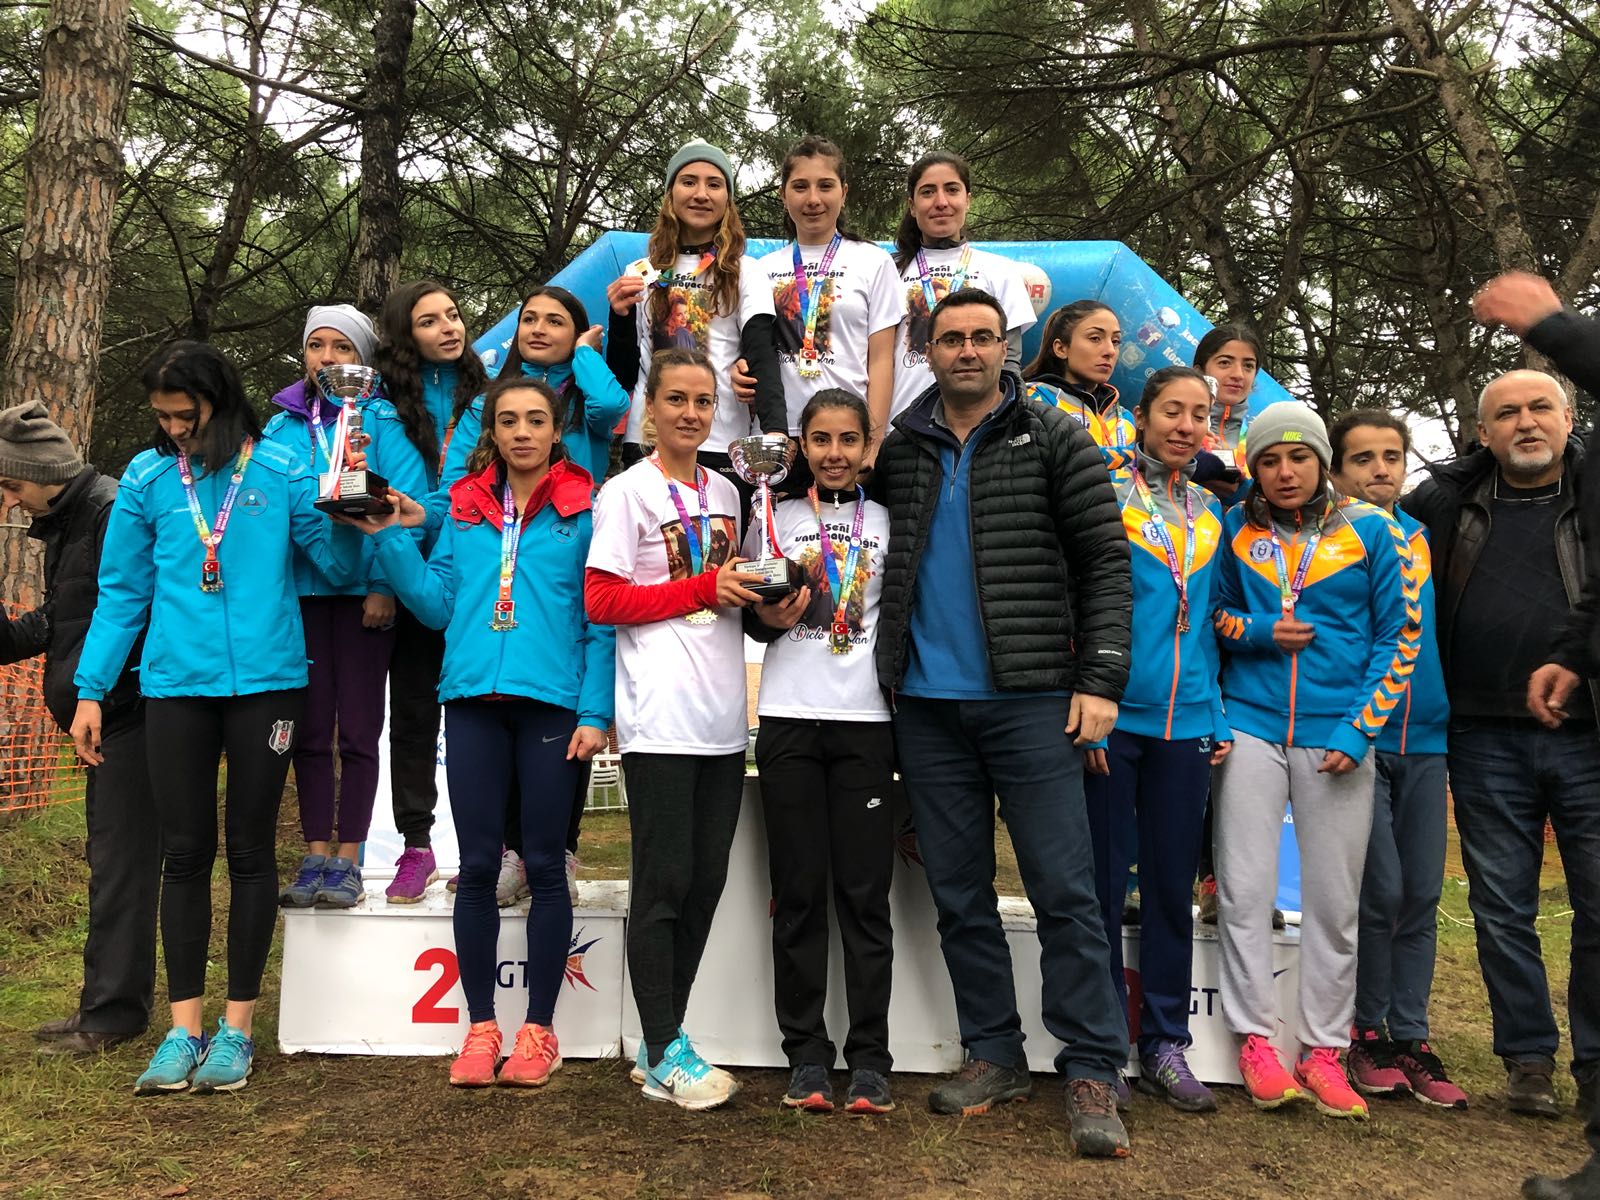 AİÇÜ’denÜniversitelerarası Kros Türkiye Şampiyonasında Önemli Başarı